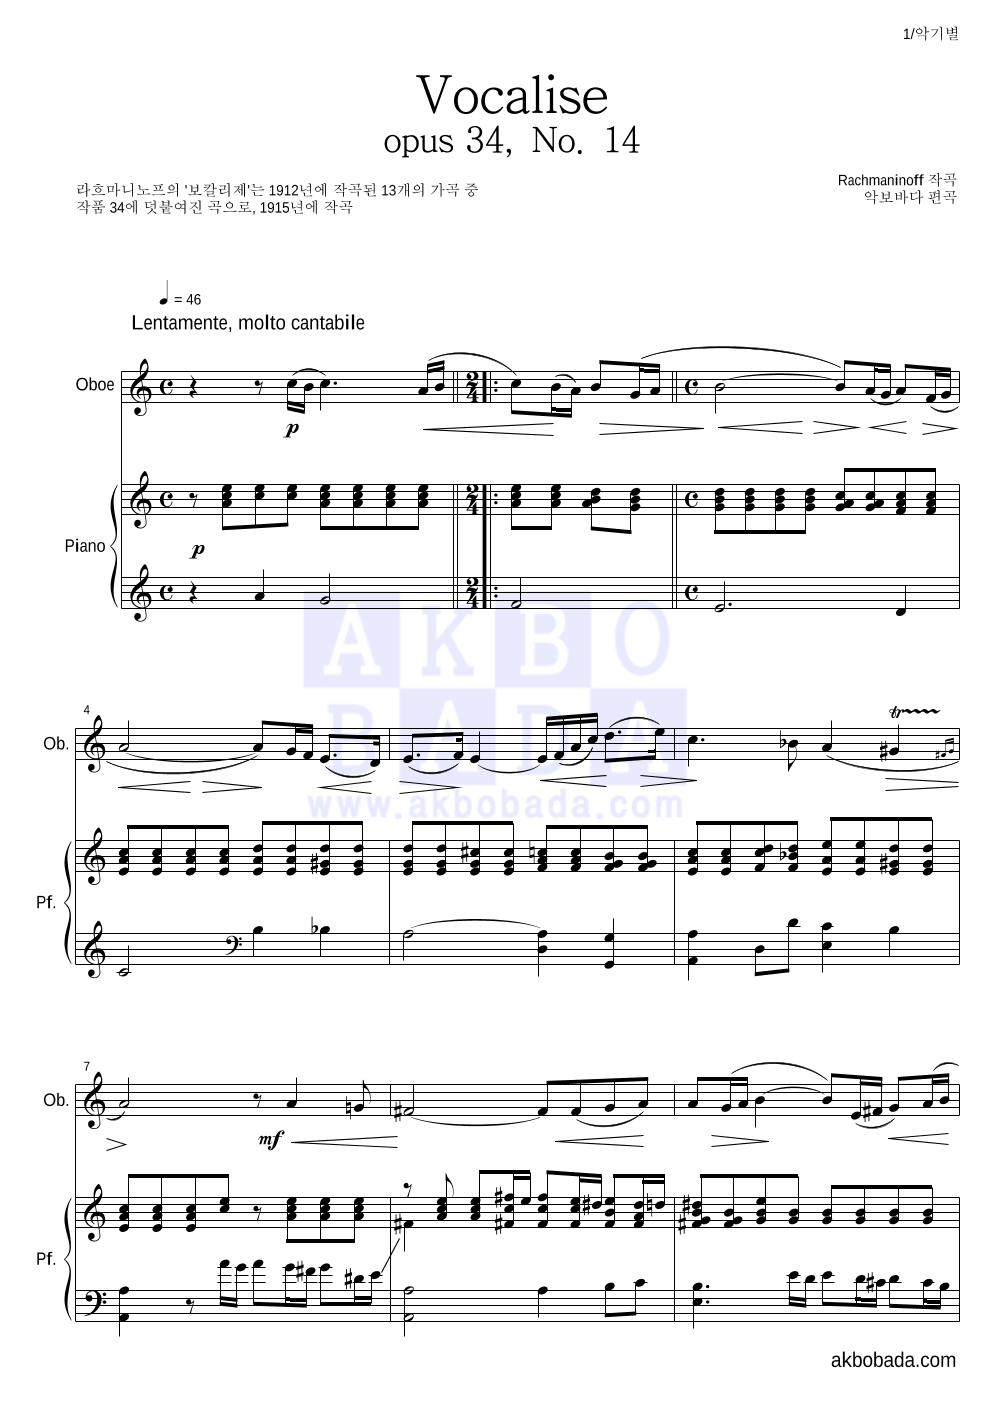 라흐마니노프 - 보칼리제(Vocalise) 오보에&피아노 악보 